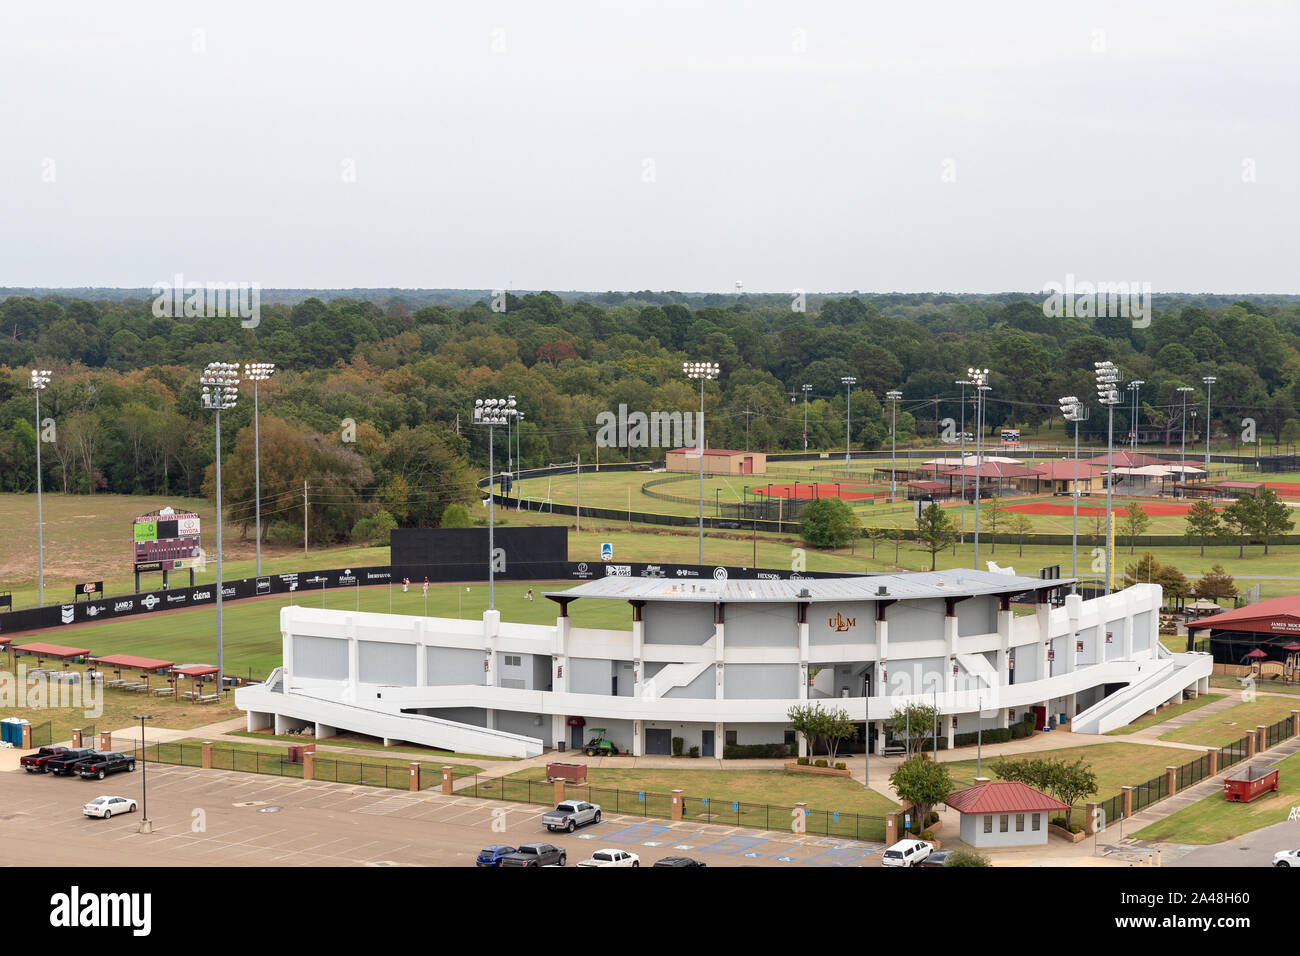 Monroe, LA, ESTADOS UNIDOS - Octubre 5, 2019: Un estadio de béisbol en el UL-campus Mornoe Foto de stock